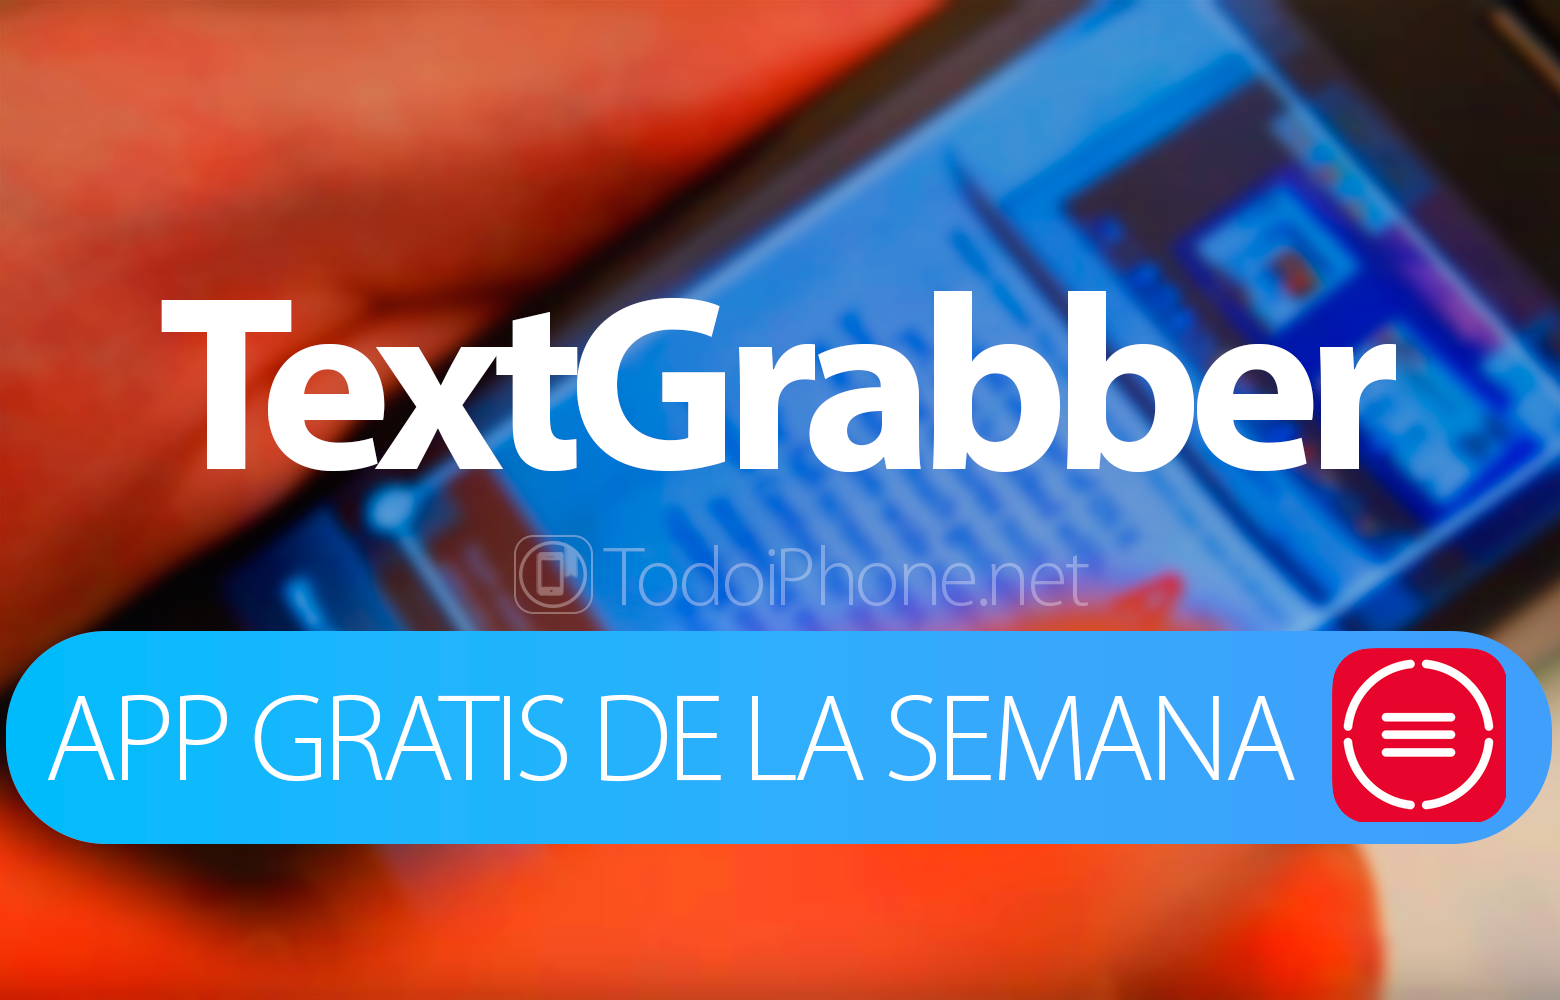 TextGrabber - Aplikasi iTunes minggu ini 1